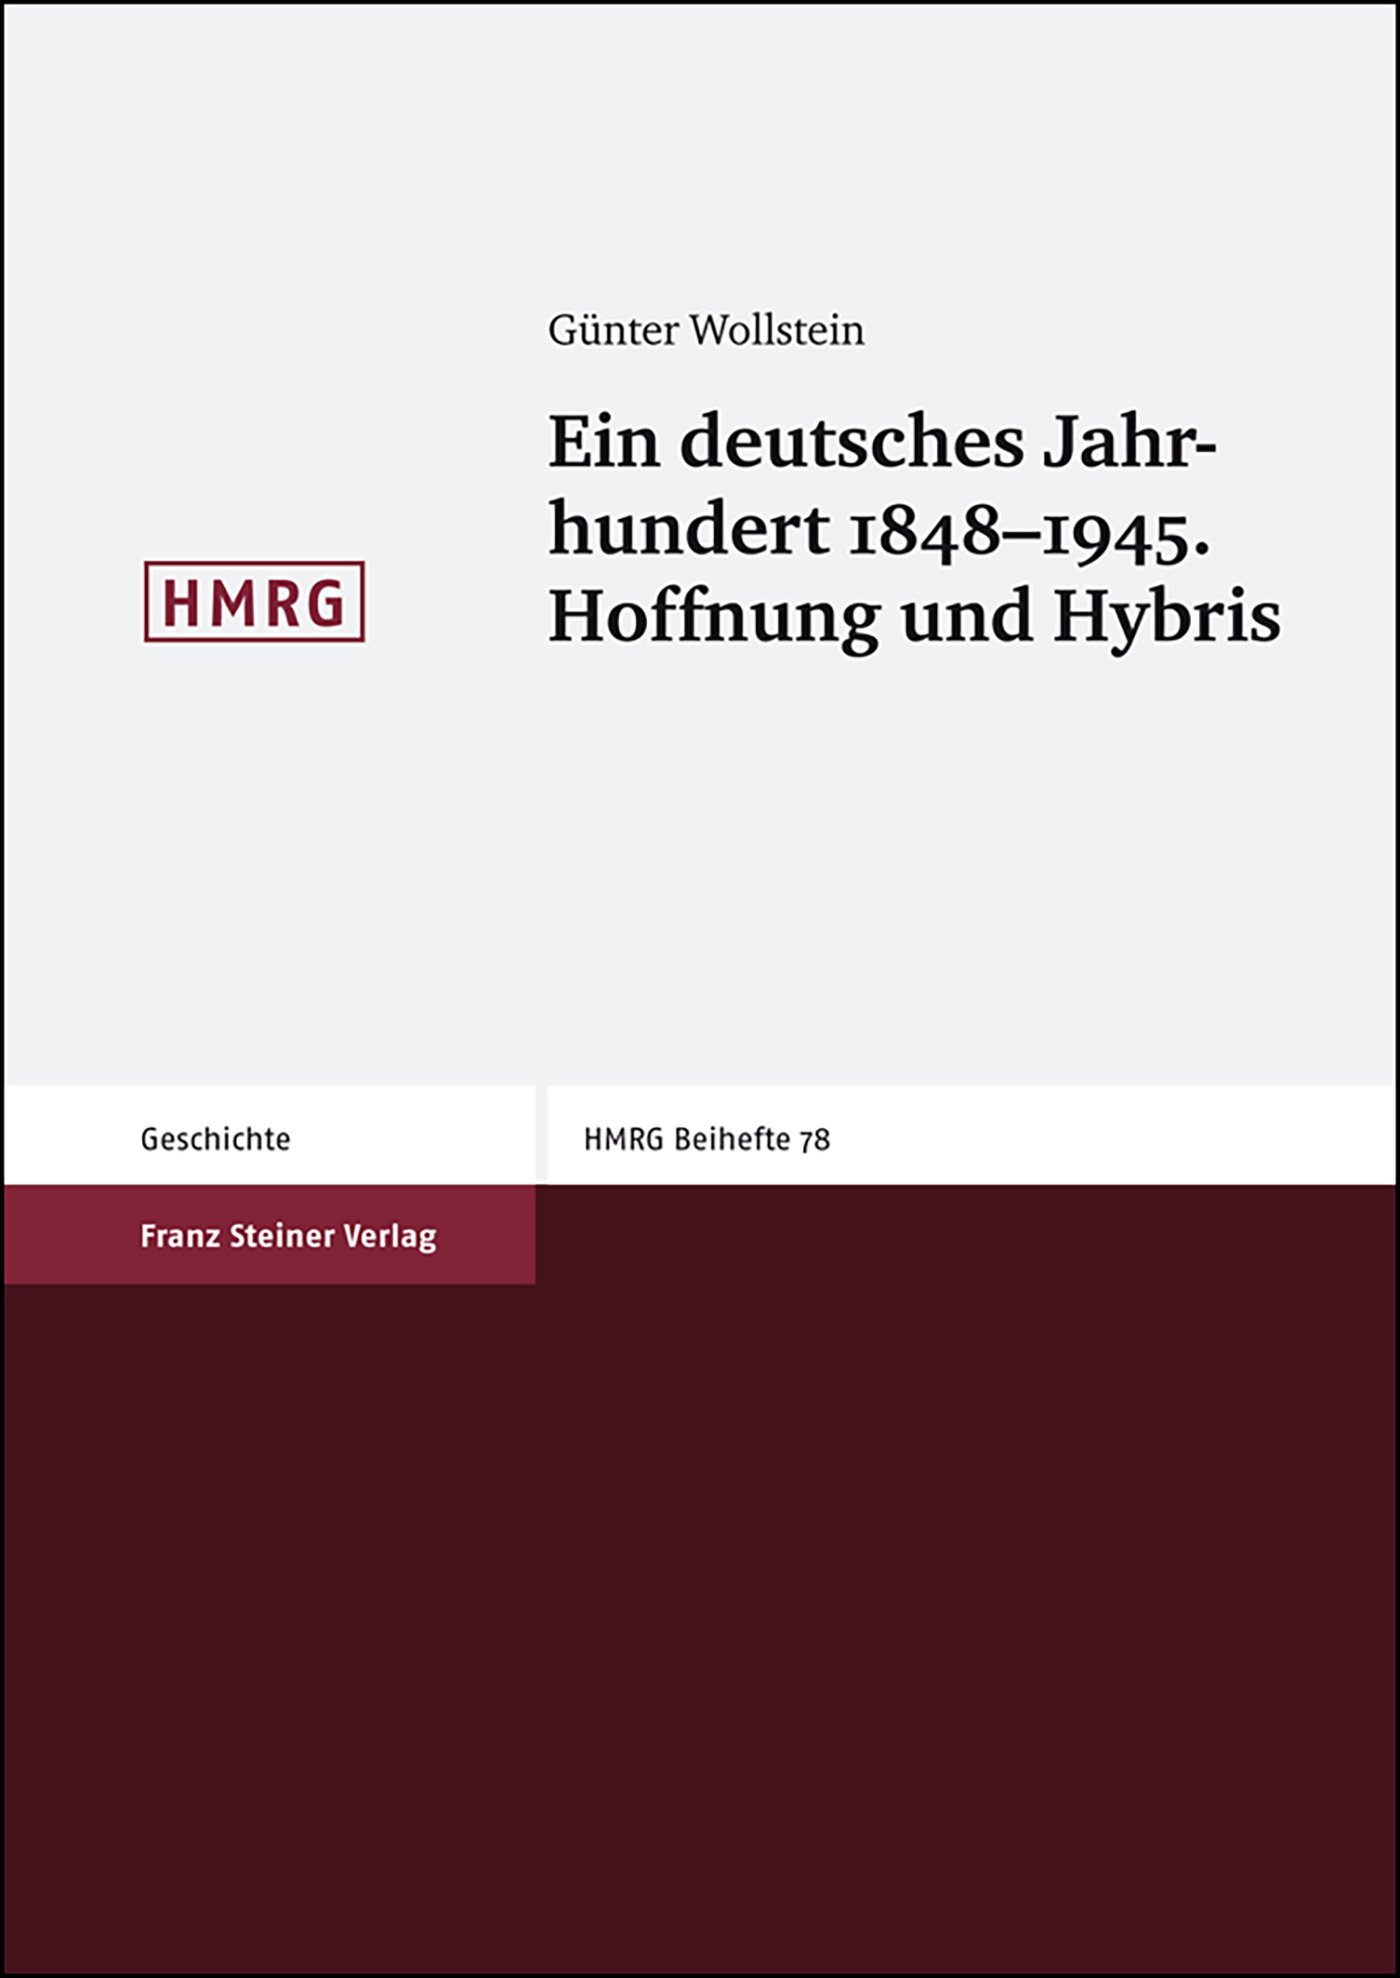 Ein deutsches Jahrhundert 1848-1945. Hoffnung und Hybris